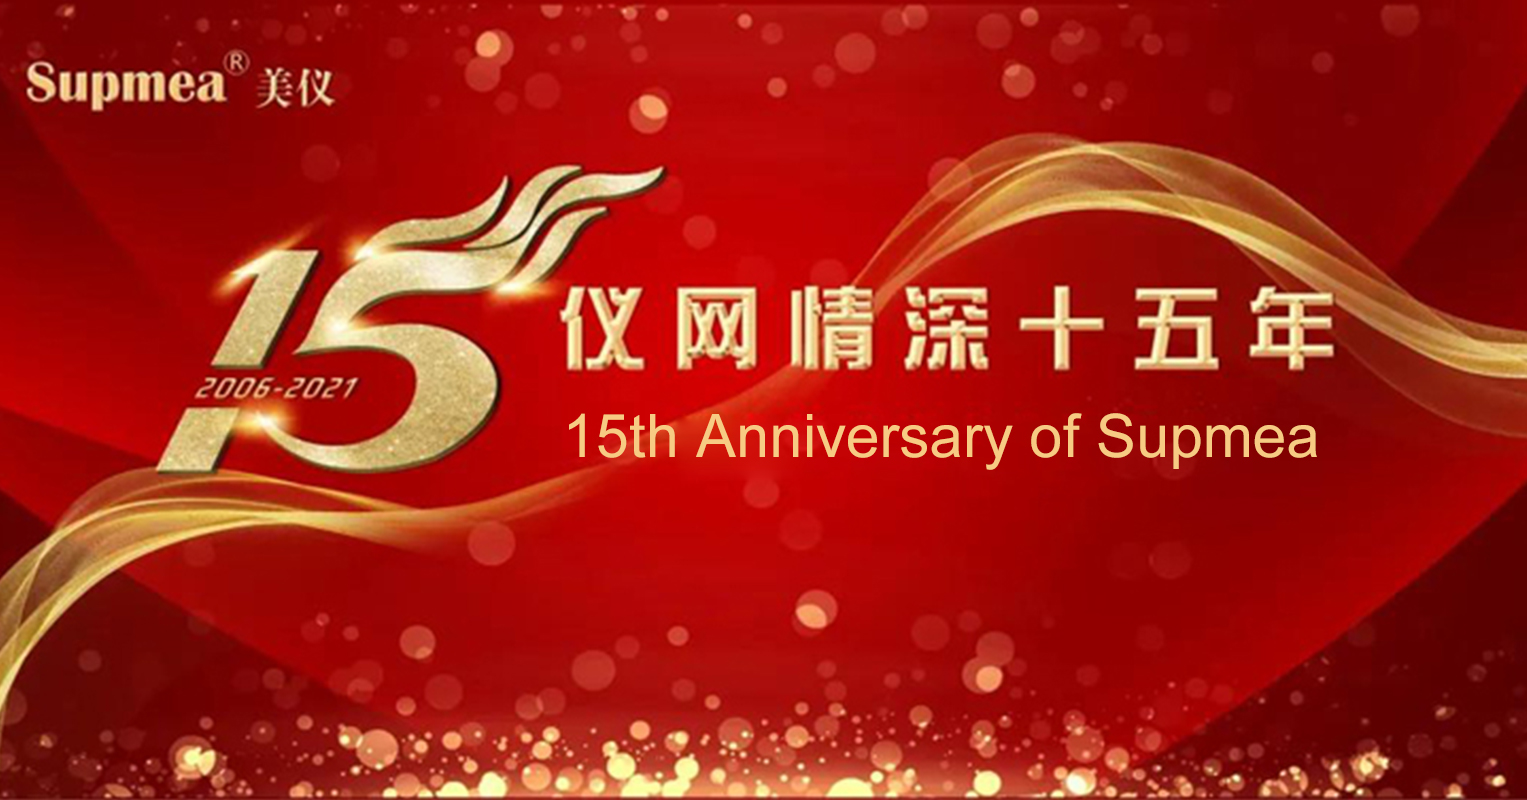 15th Anniversary of Supmea